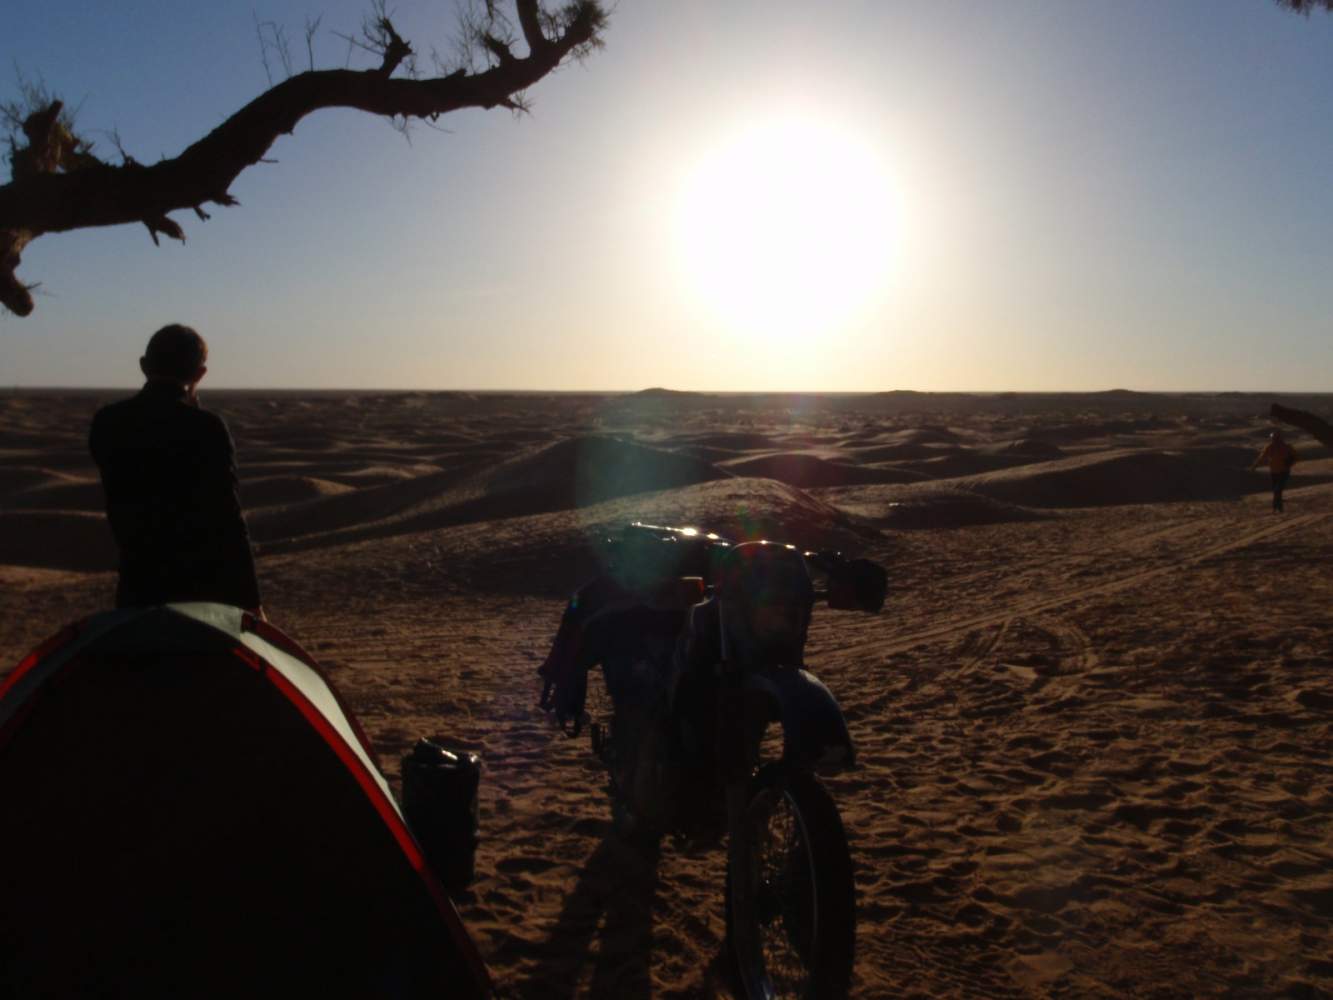 Sonnenuntergang in der Sahara beim Endurowandern mit dem Zelt